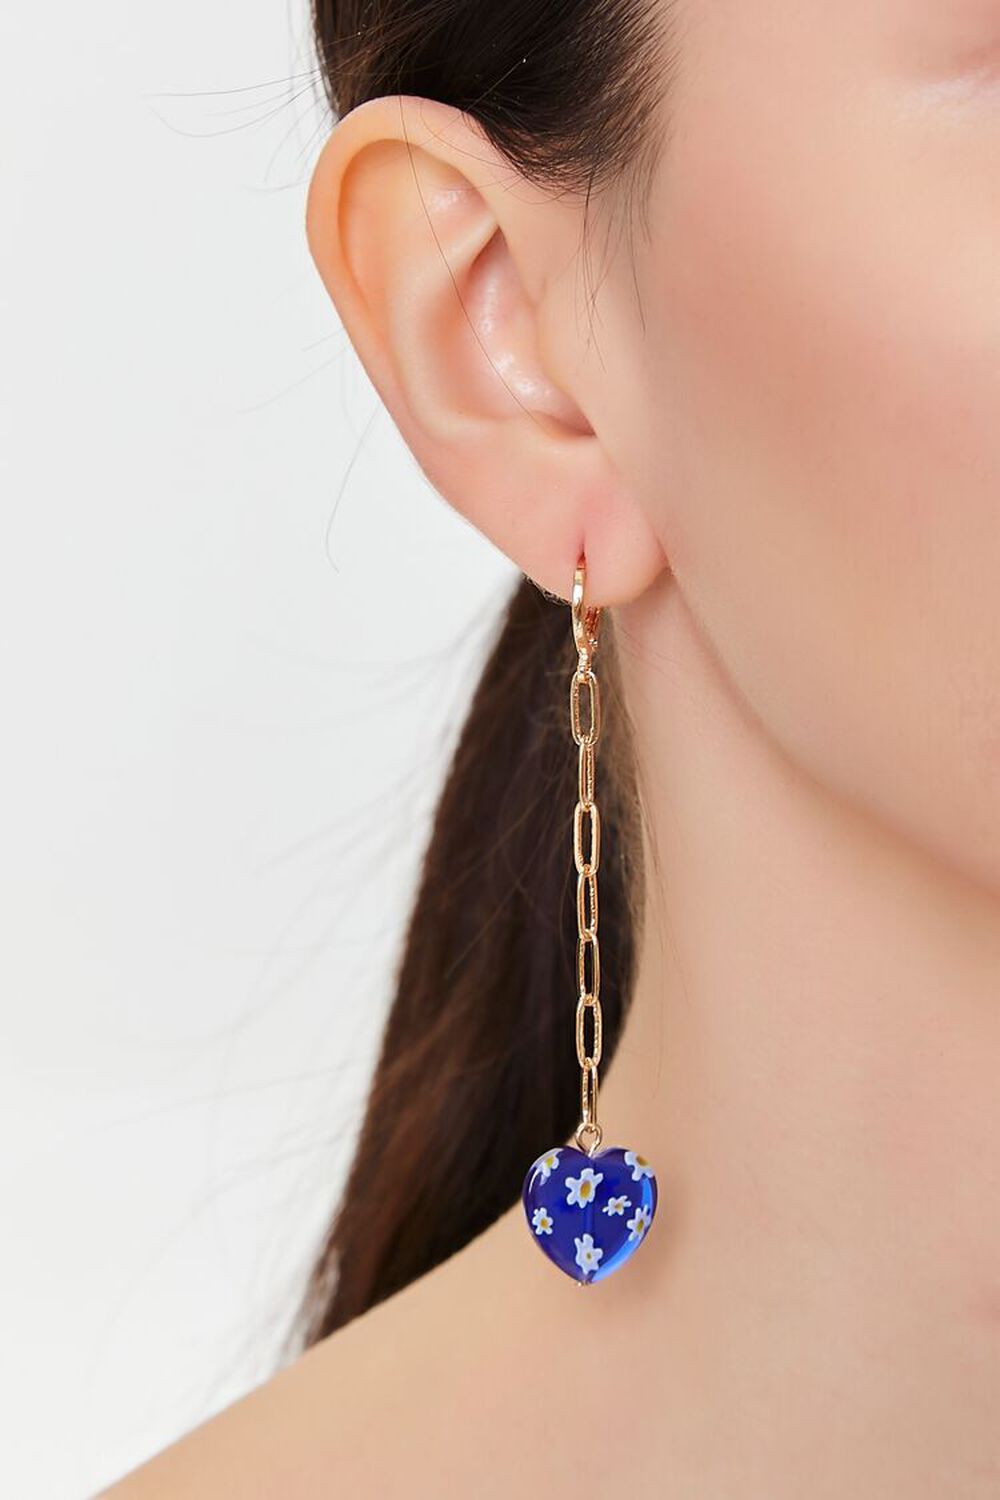 BLUE Flower Print Heart Drop Earrings, image 1